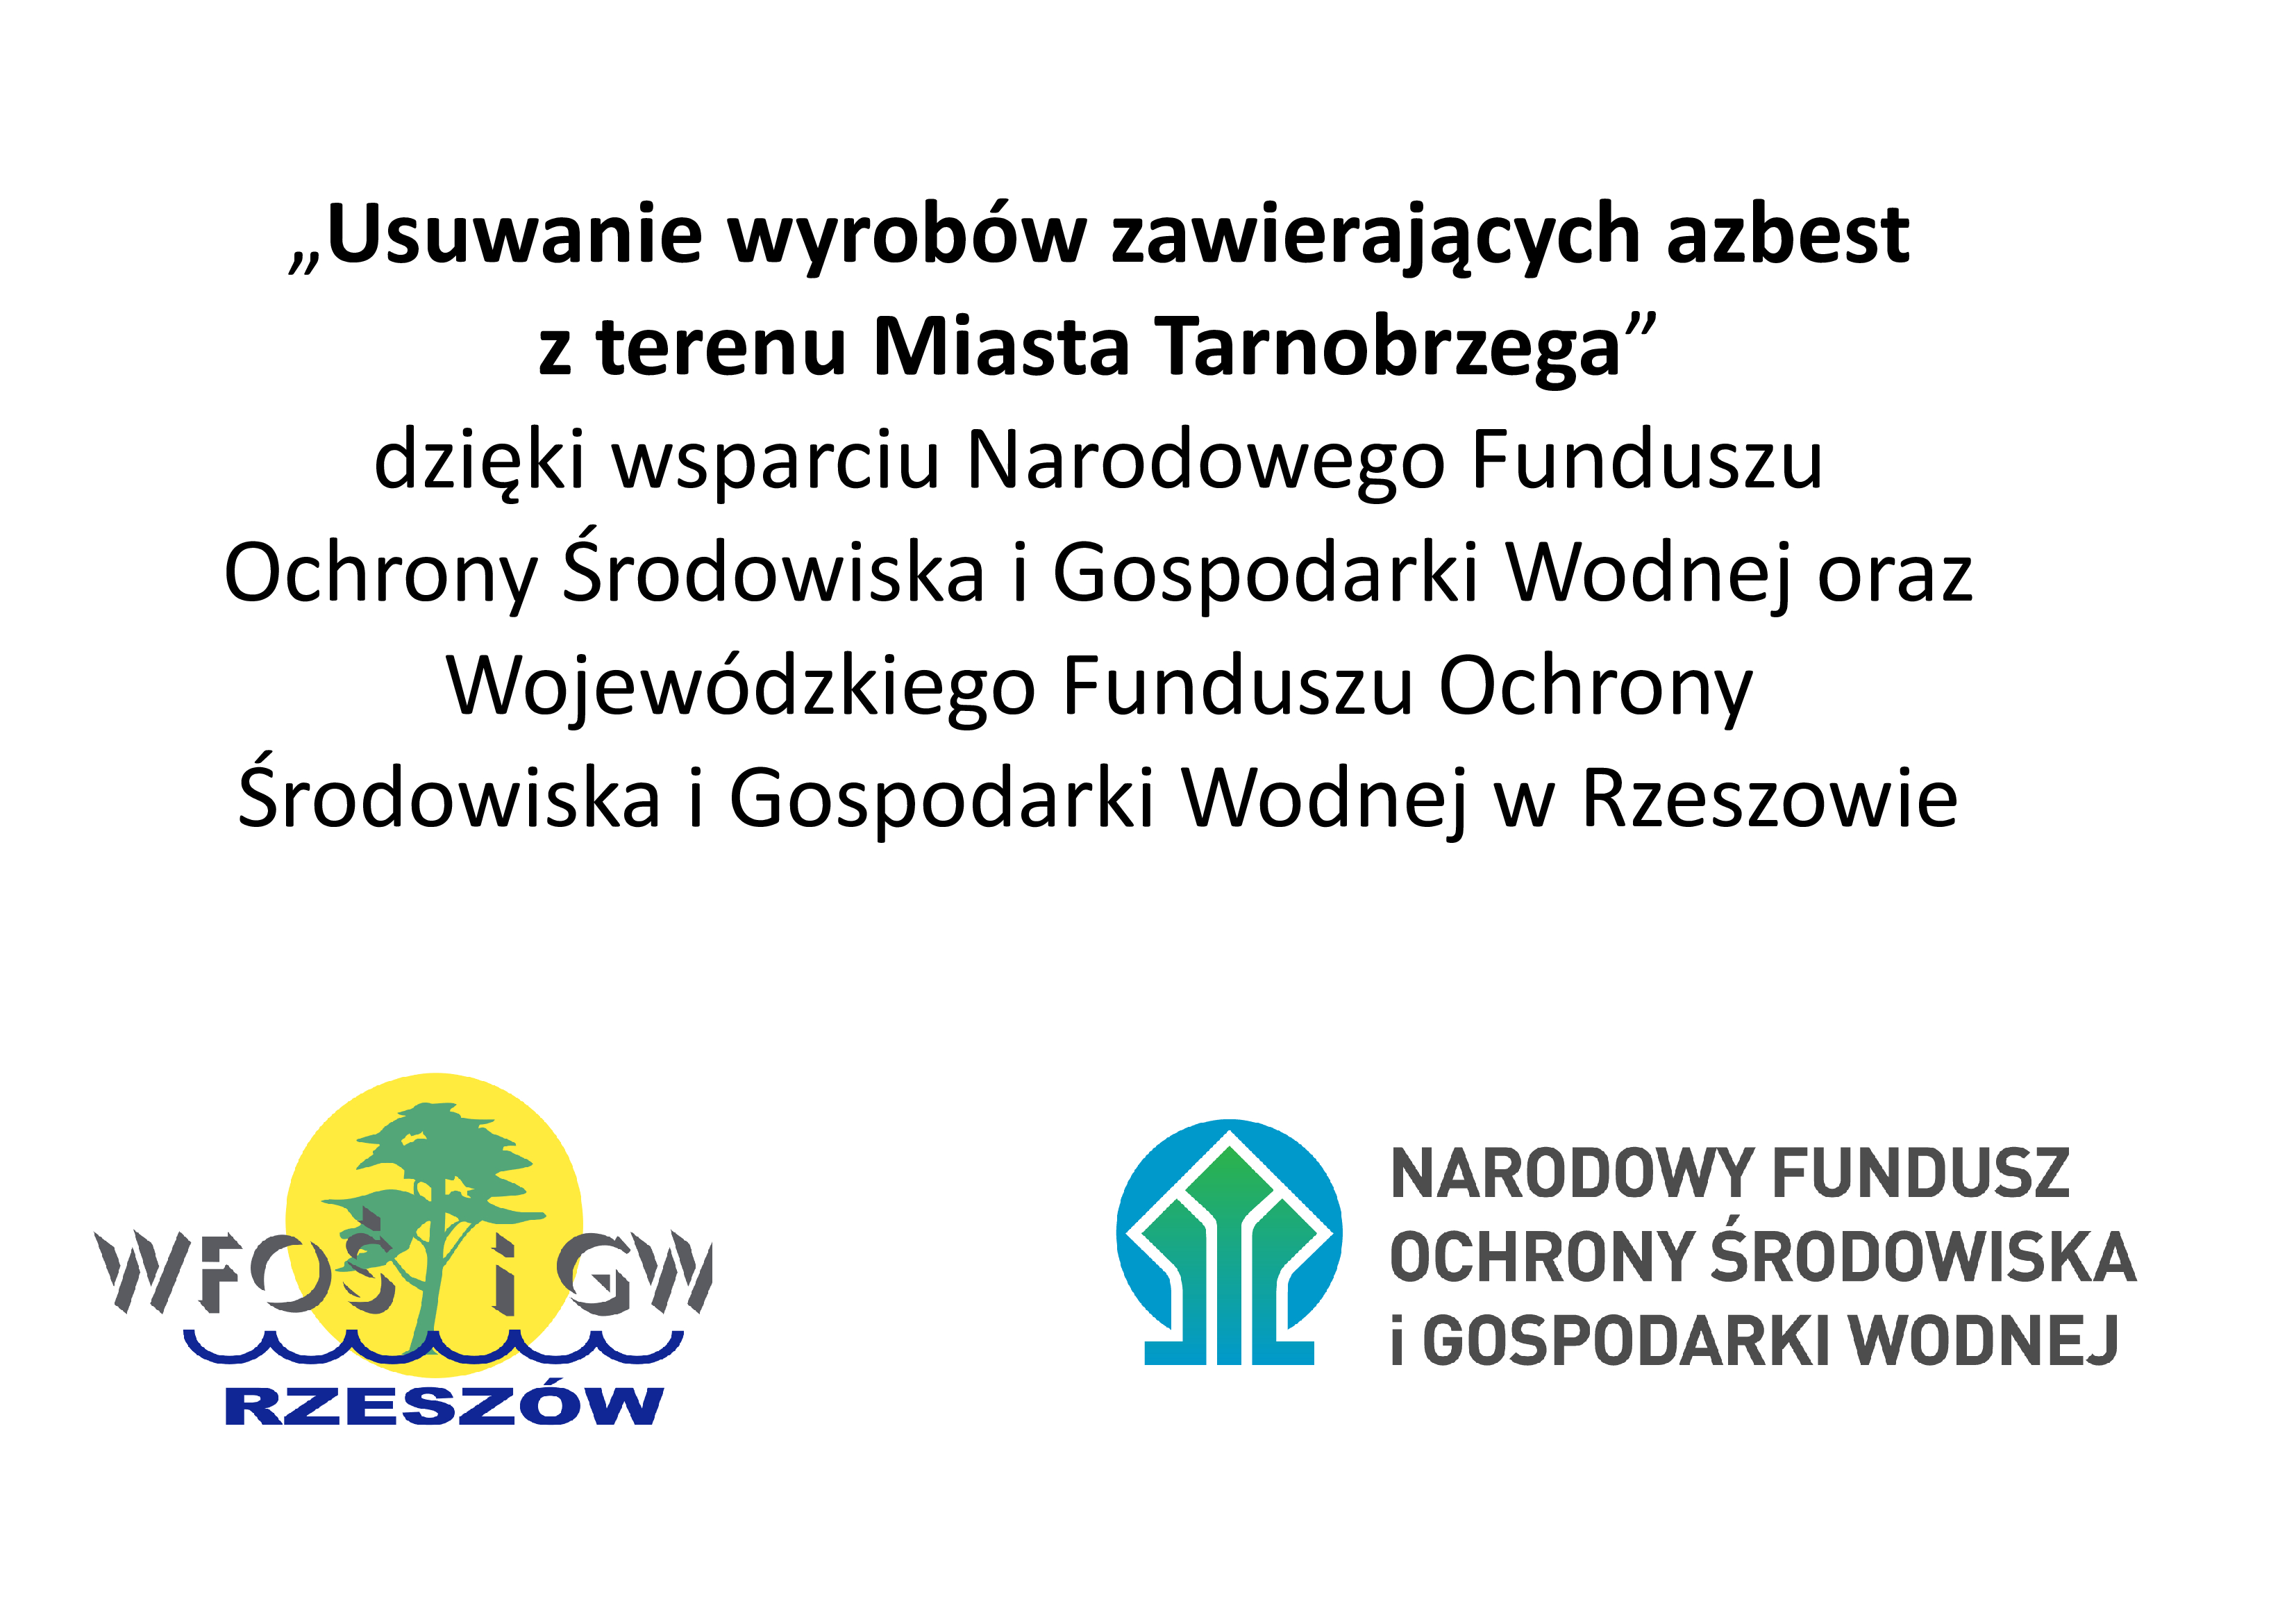 Tylko w tym roku z terenu Tarnobrzega usunięto ponad 114 ton azbestu. Program wspierają: WFOŚiGW oraz NFOŚiGW